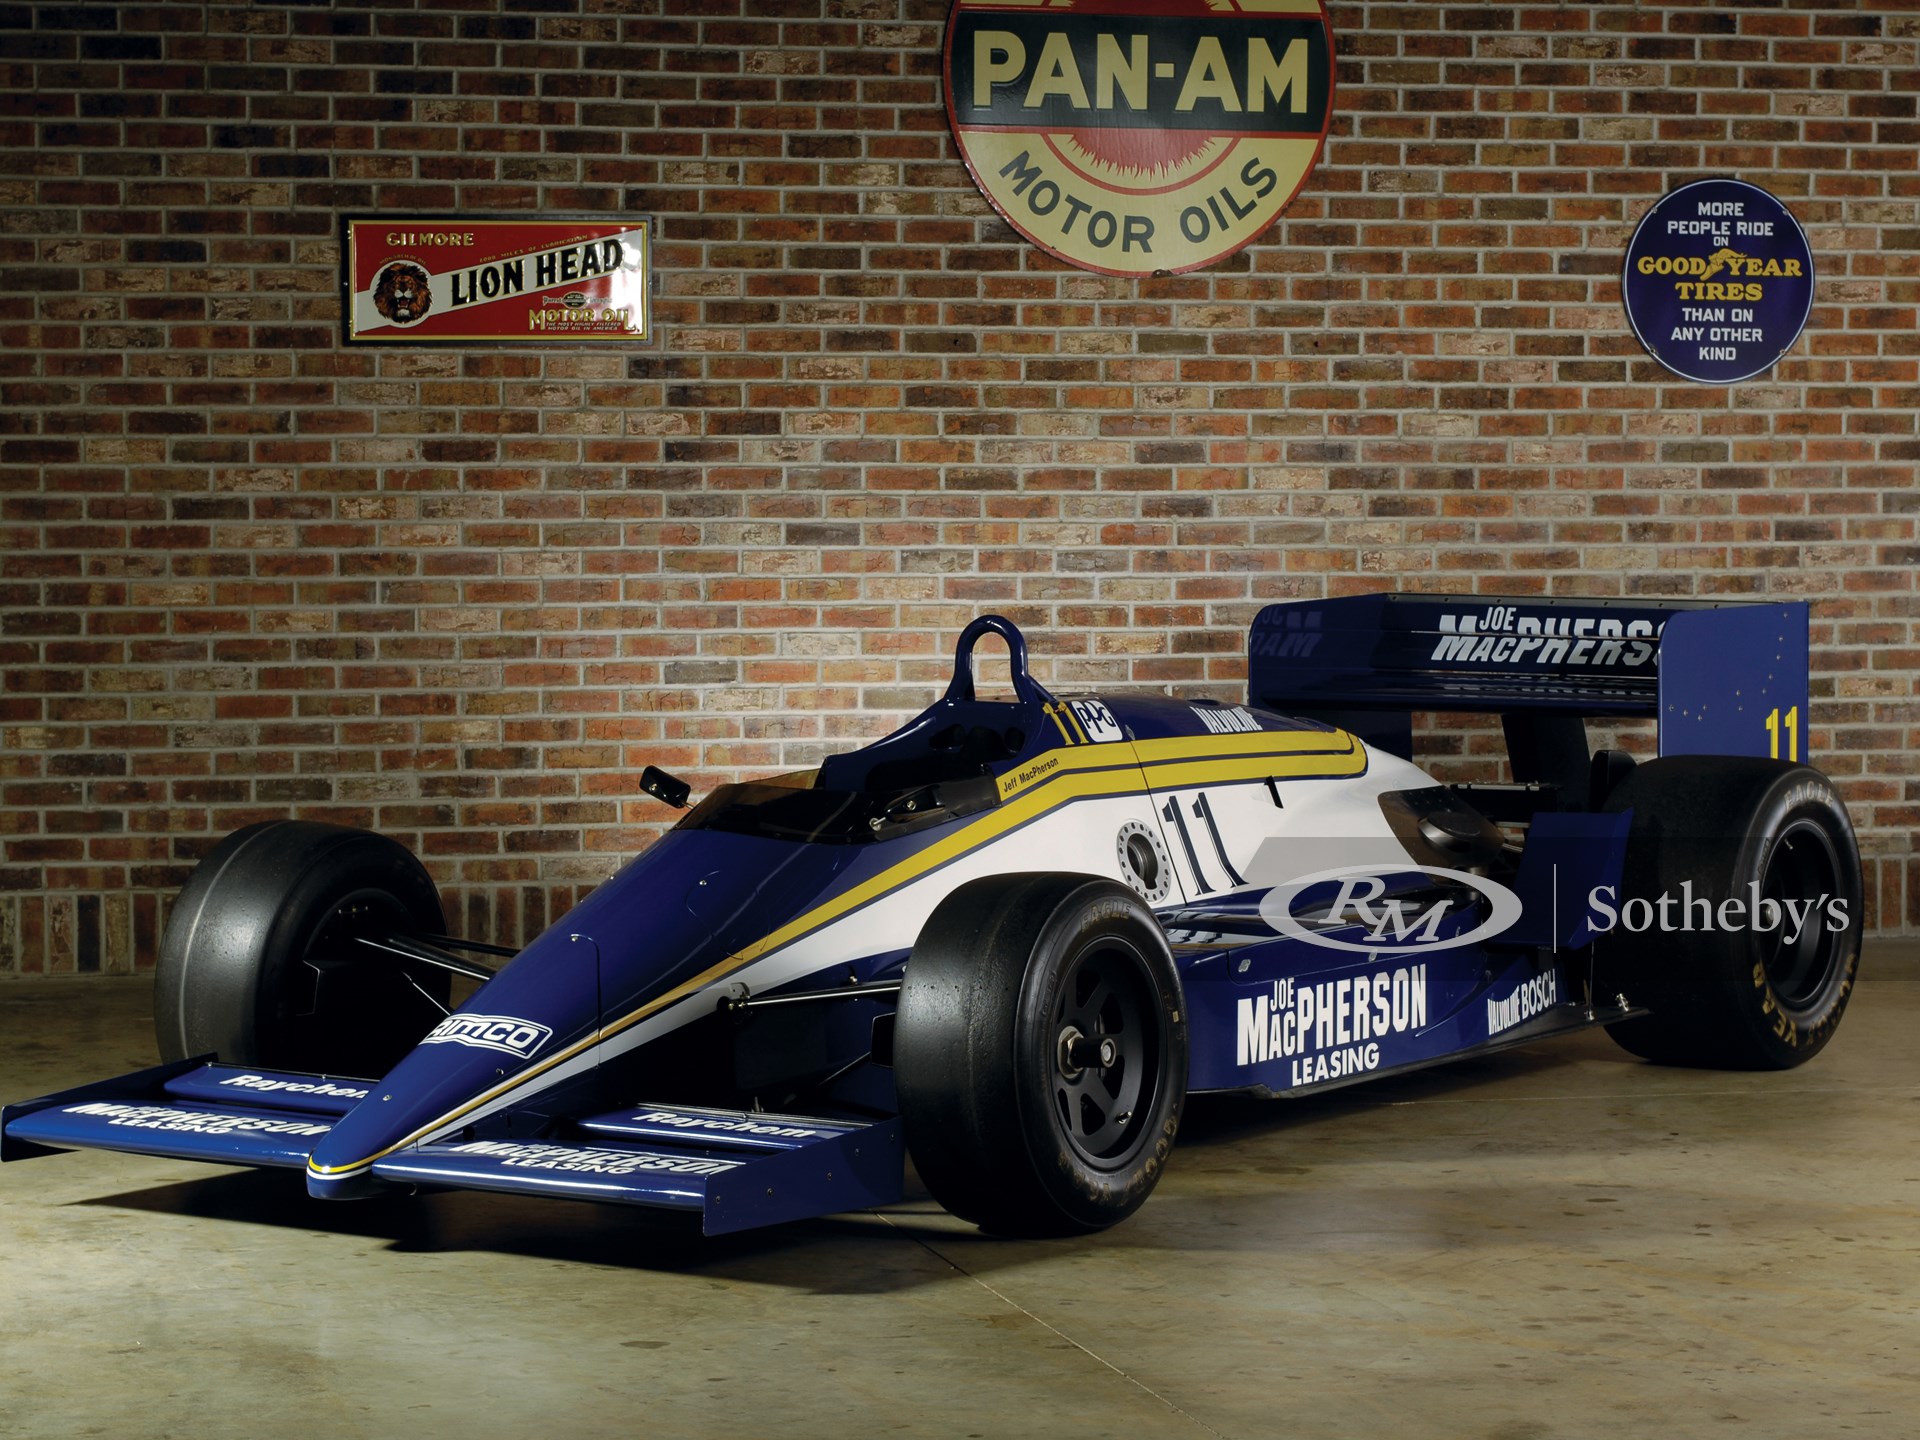 1987 March 87C Indianapolis Racing Car 